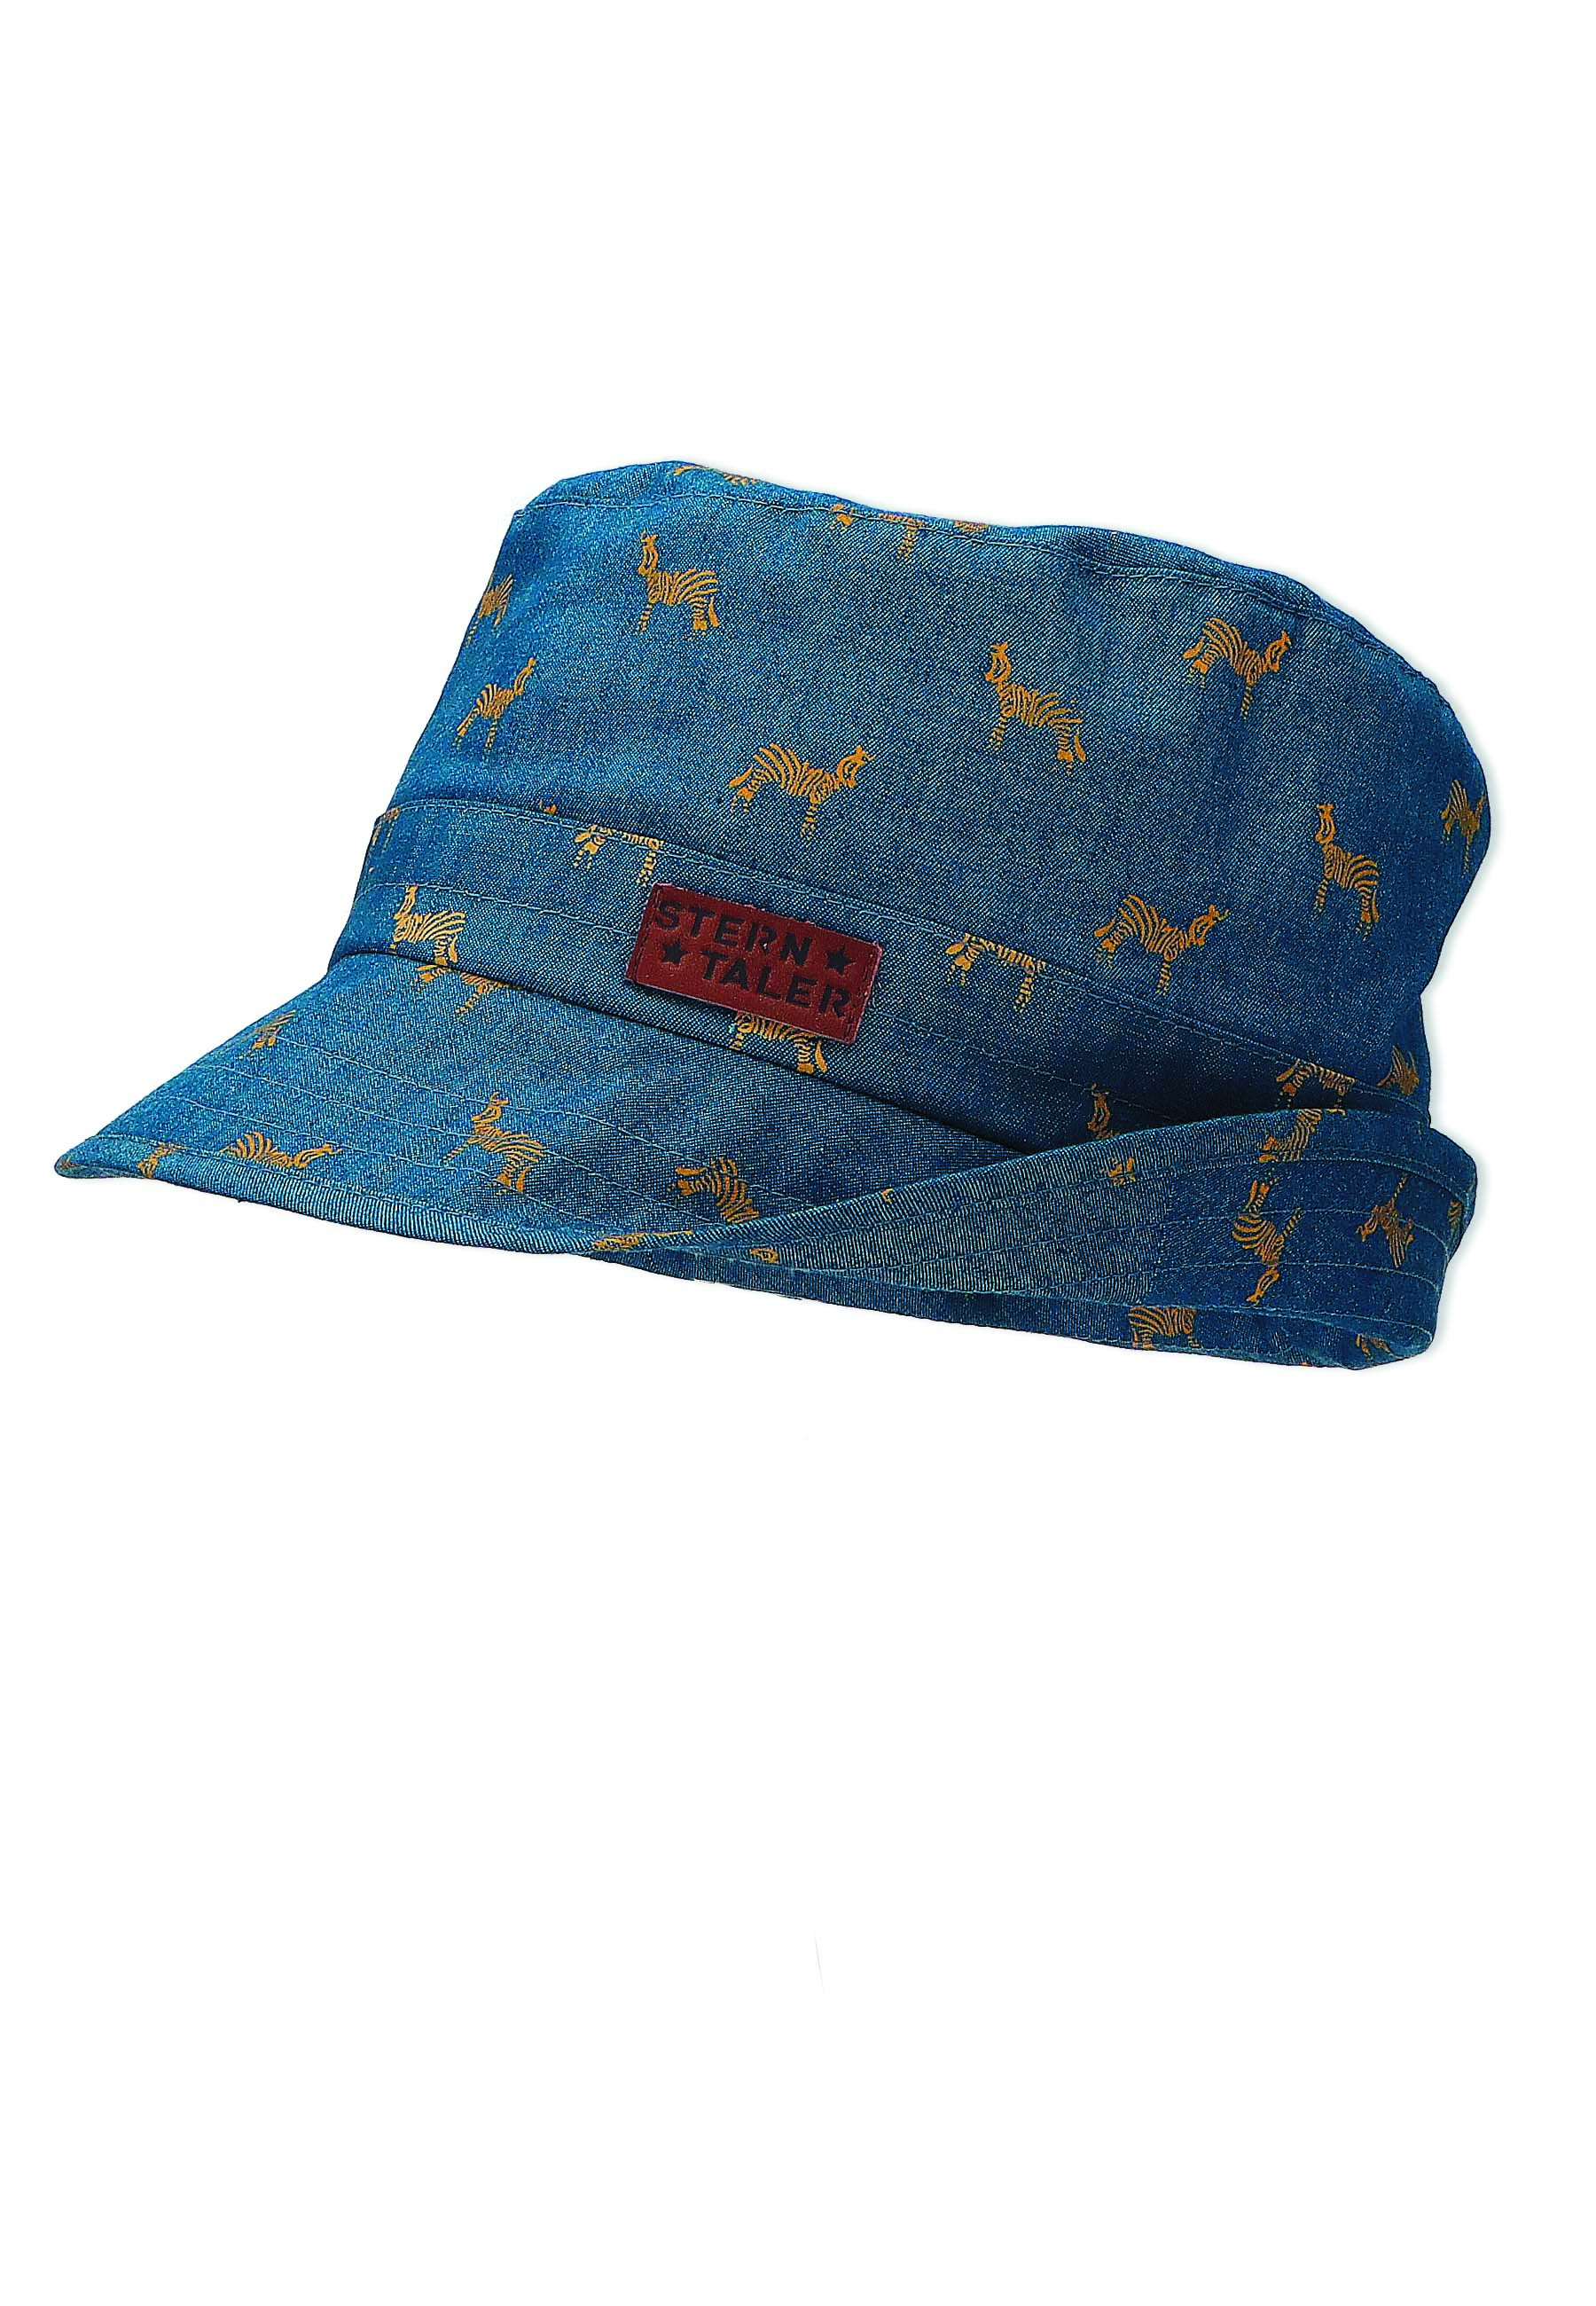 Sterntaler klobouk bio bavlna UV 50+ džínově modrý, zebry 1622251